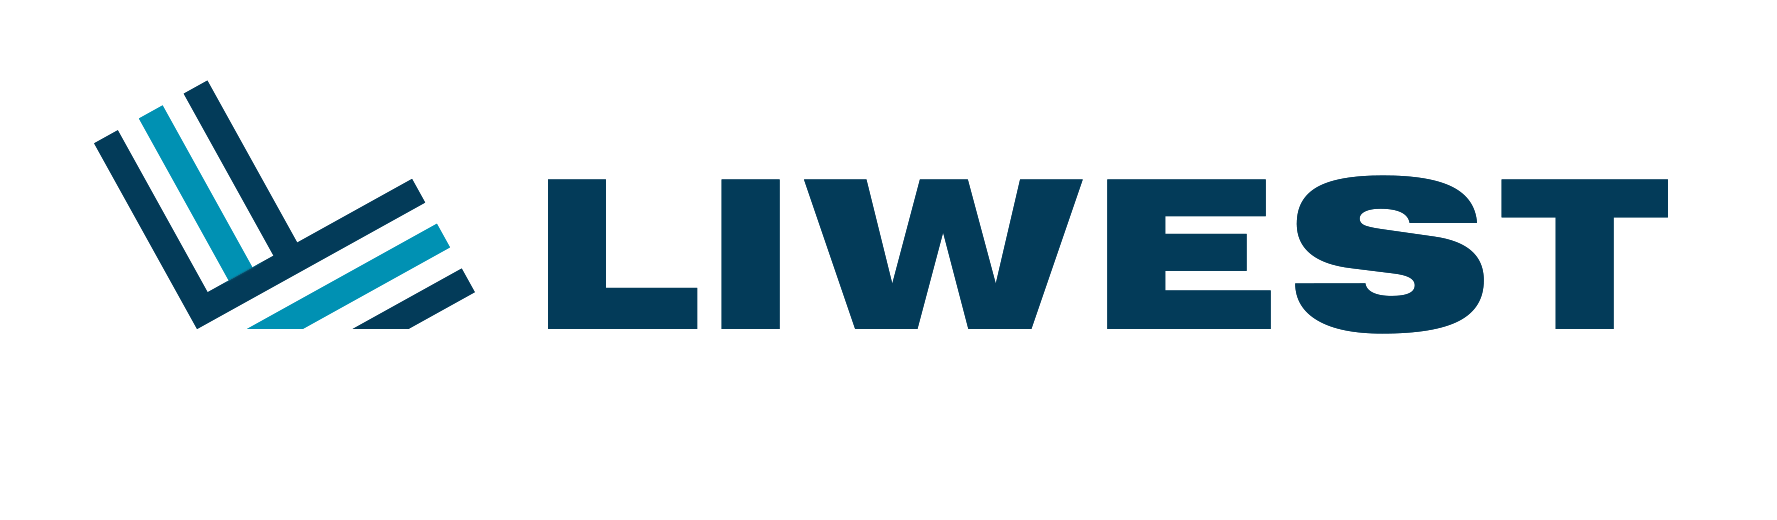 LIWEST Logo ohneClaim2